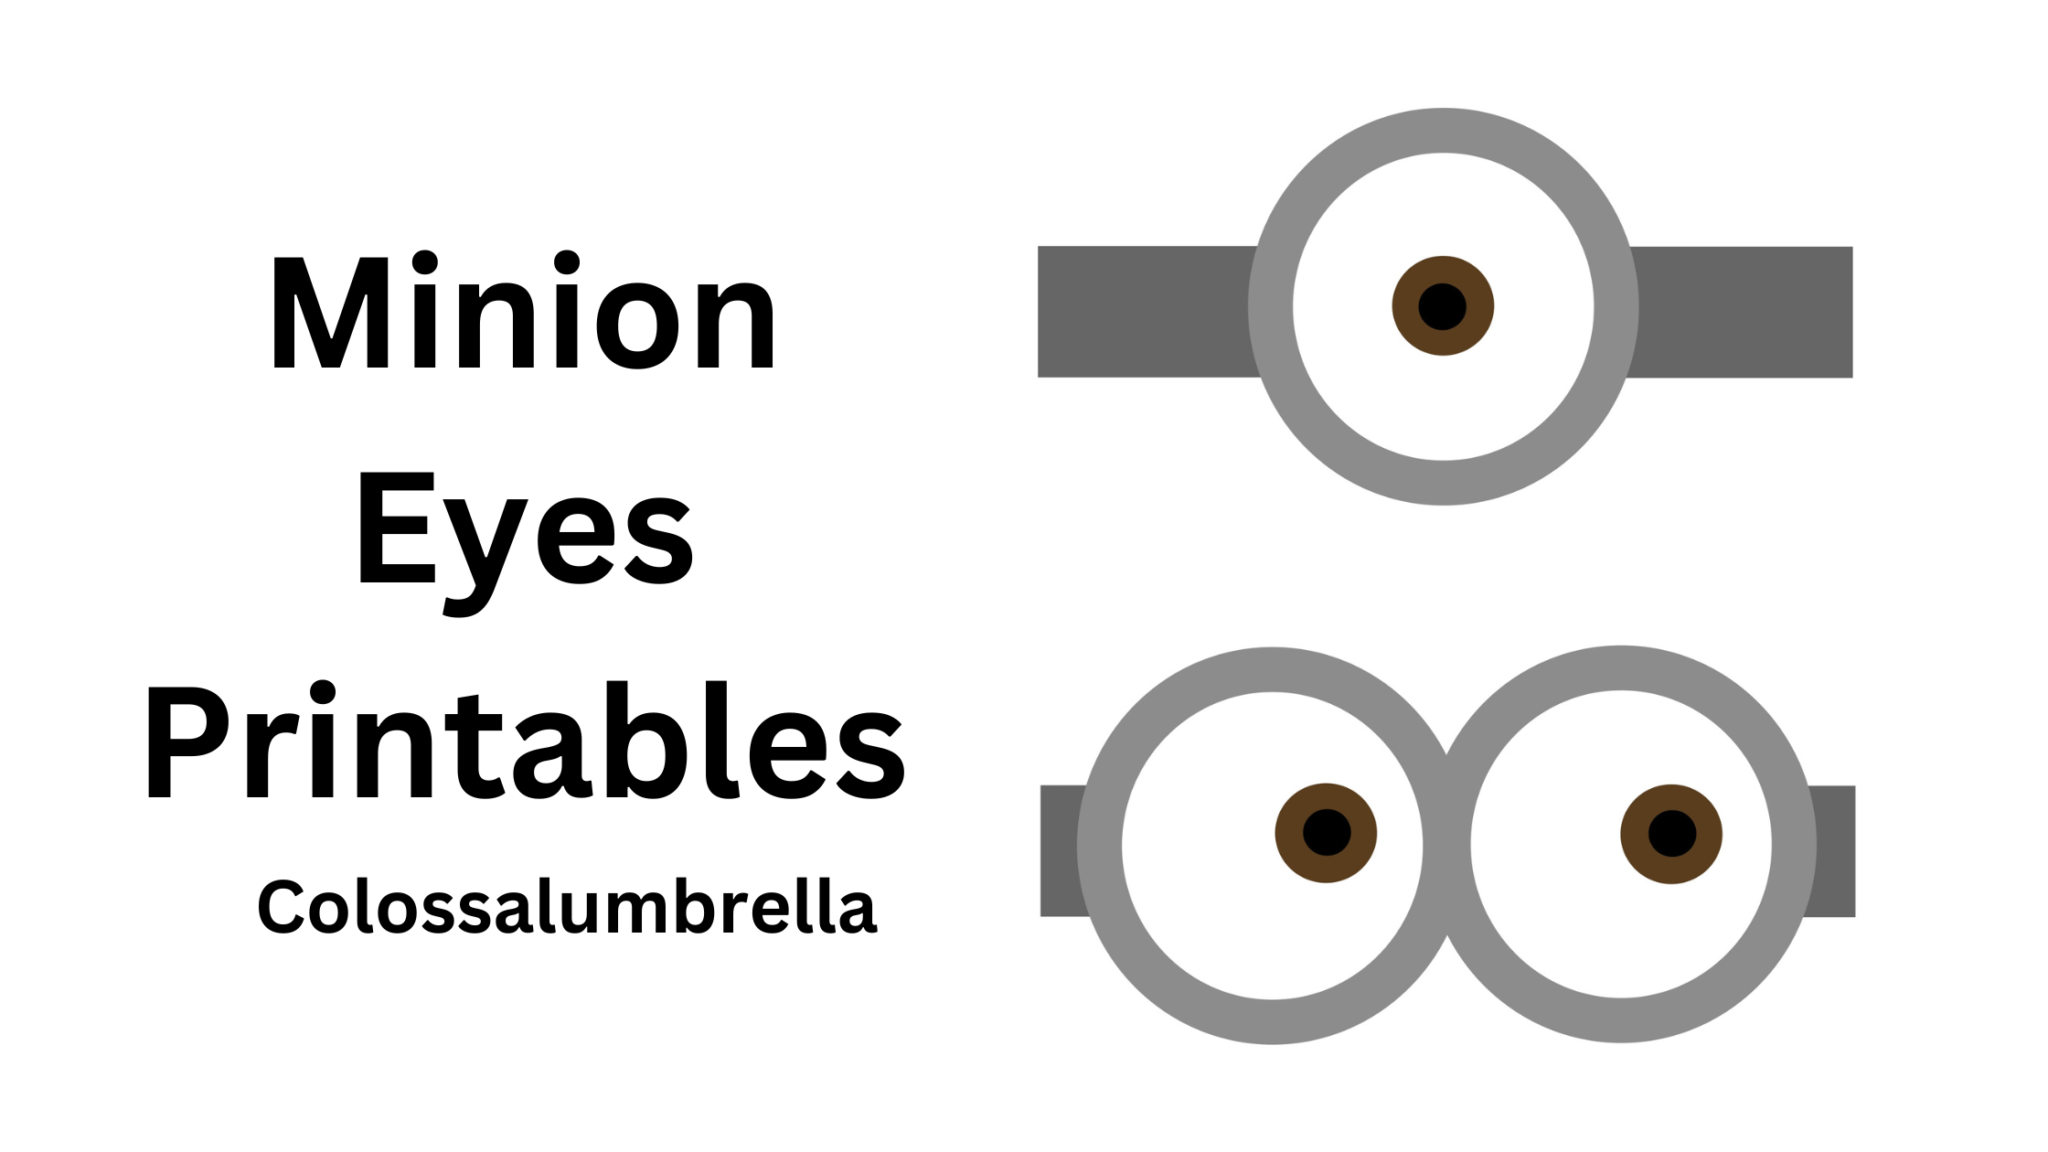 free printable minion eyes template